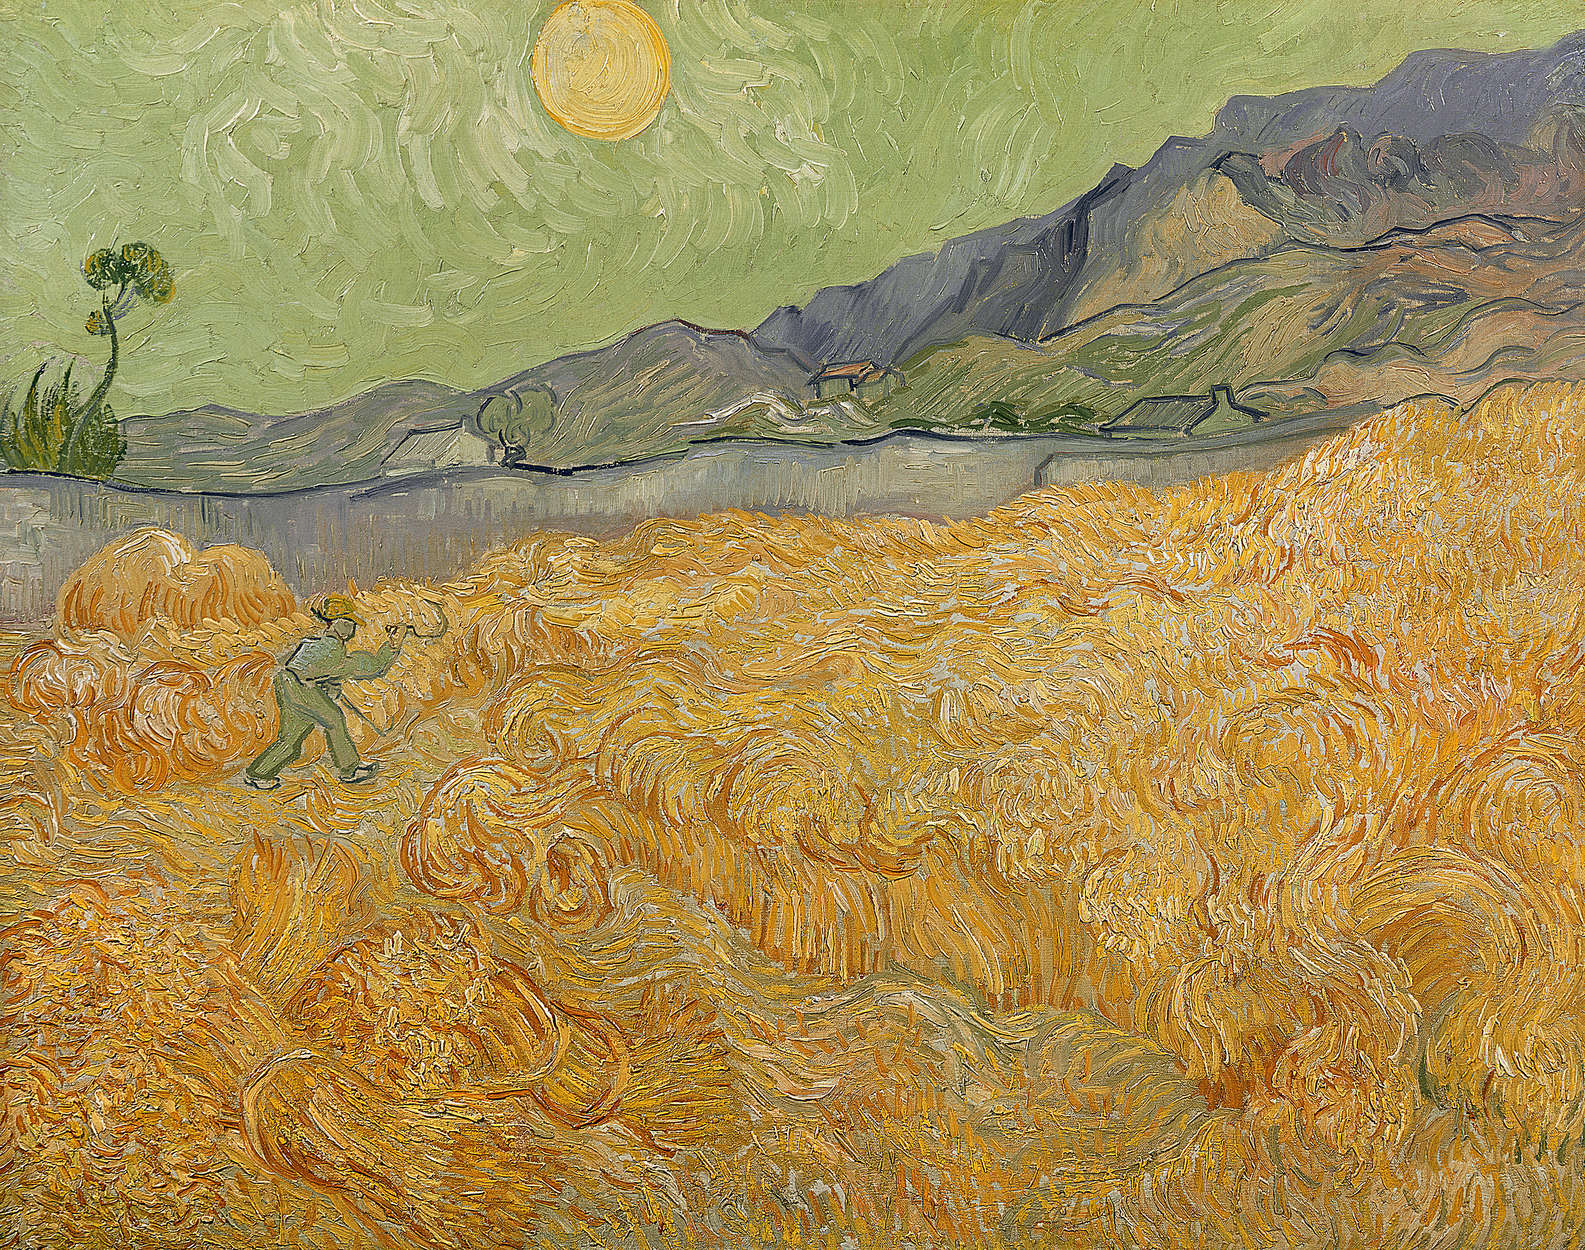             Papier peint "Champ de blé avec faucheuse" de Vincent van Gogh
        